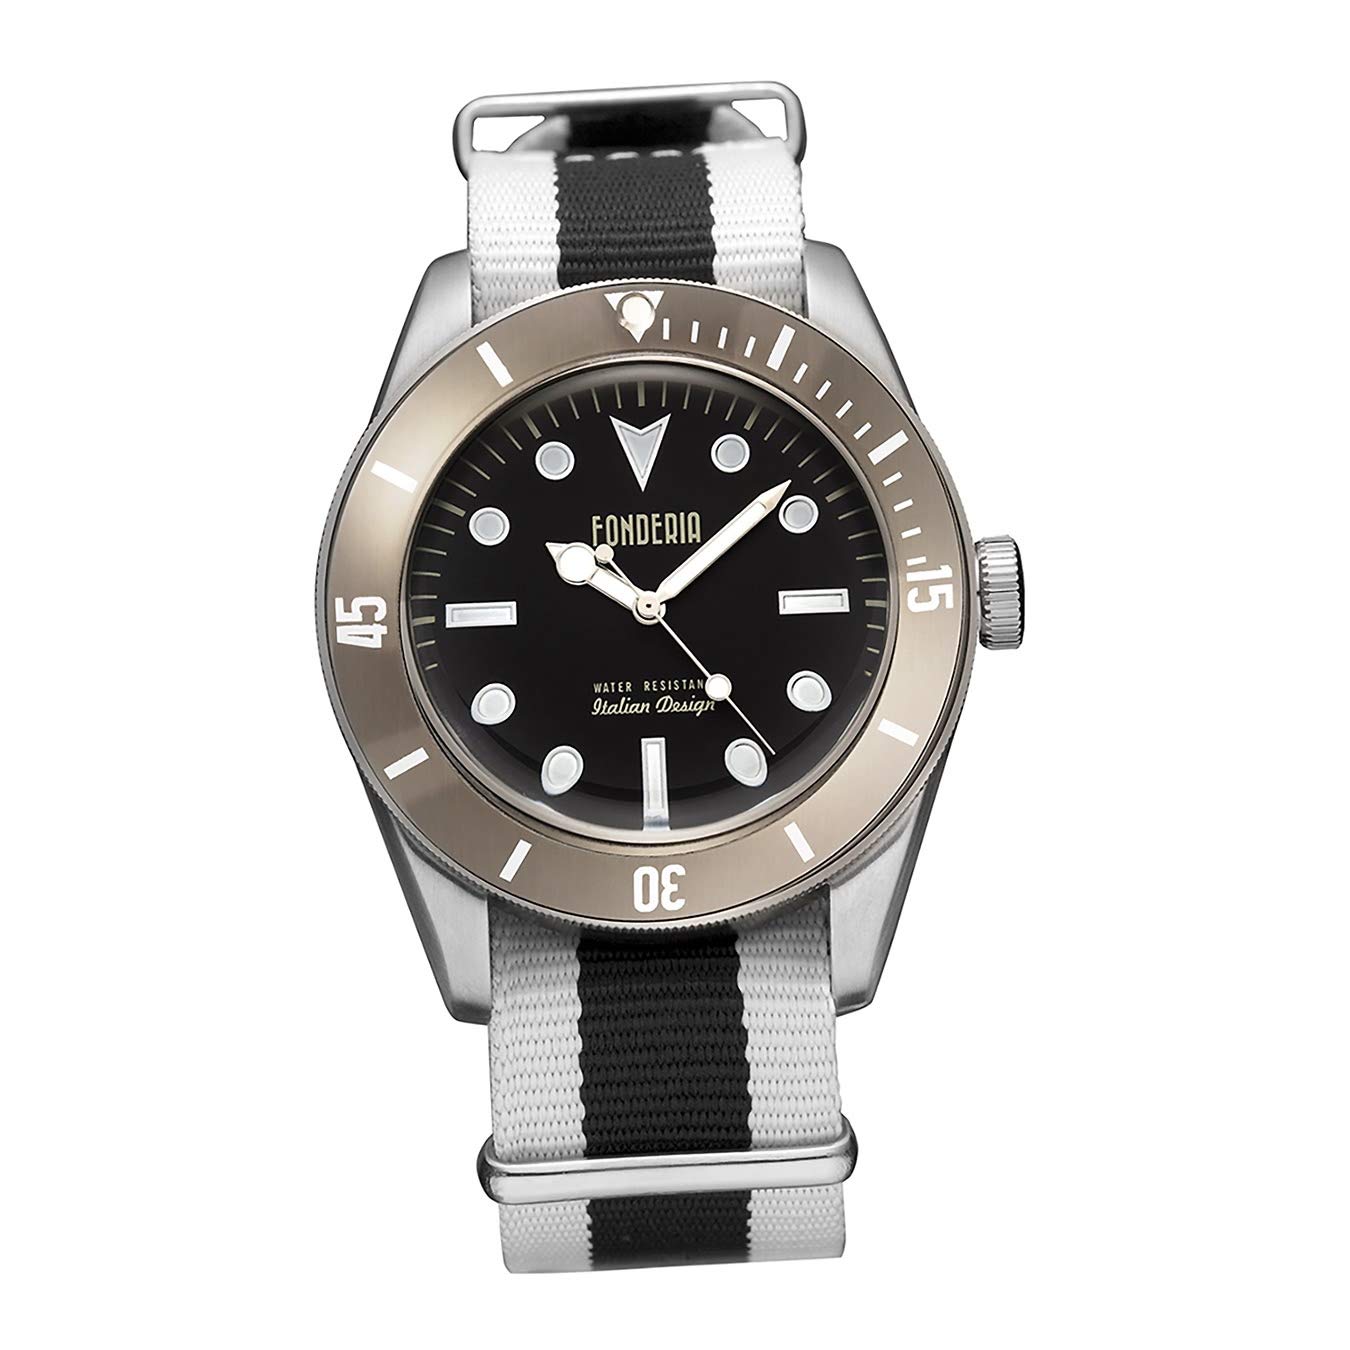 Fonderia Armbanduhr Herren P-8A002UNM Textil Uhr weiß Seawolf D2UAP8A002UNM EIN Geschenk zu Weihnachten, Geburtstag, Valentinstag für den Mann